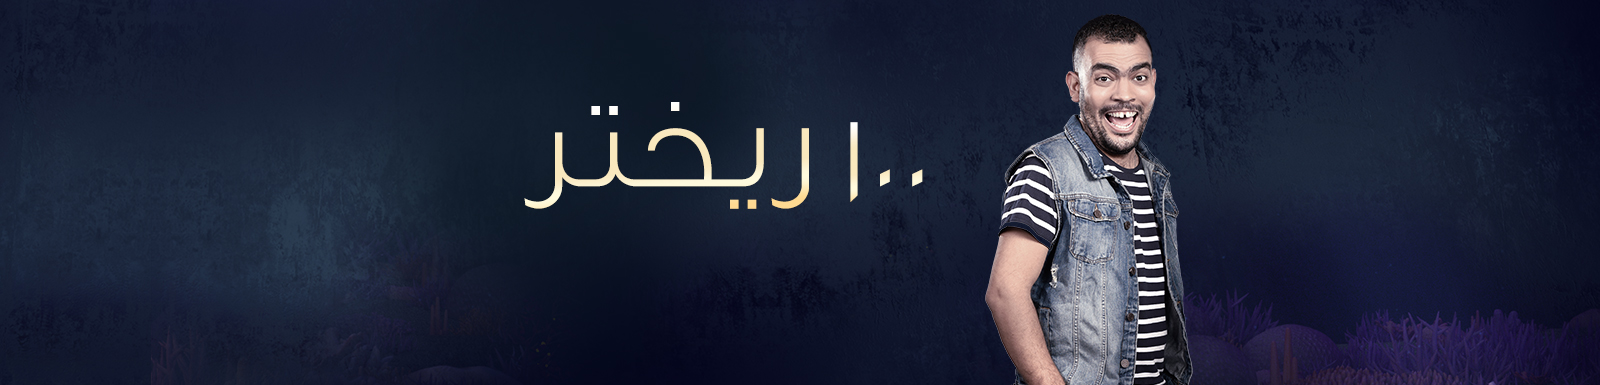 تحميل برنامج ١٠٠ ريختر الحلقة 10 حلقة علاء مرسي